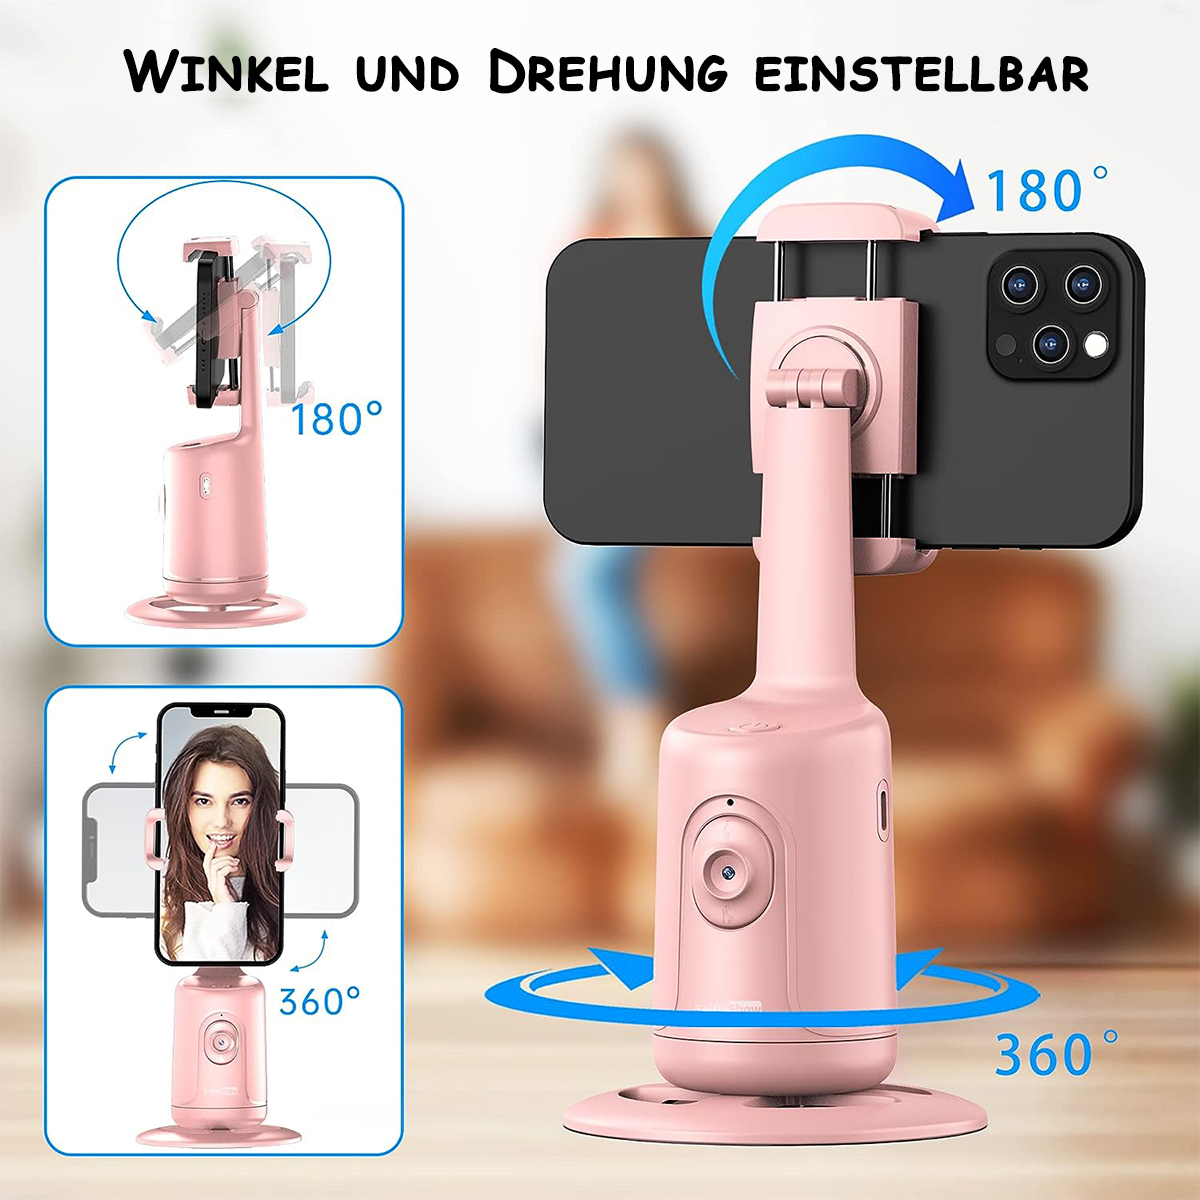 DIIDA Gimbal Drehung, Smartphone, Gimbal Handy Erkennung, Selfie rosa Halter AI 360° Selfie-Stick